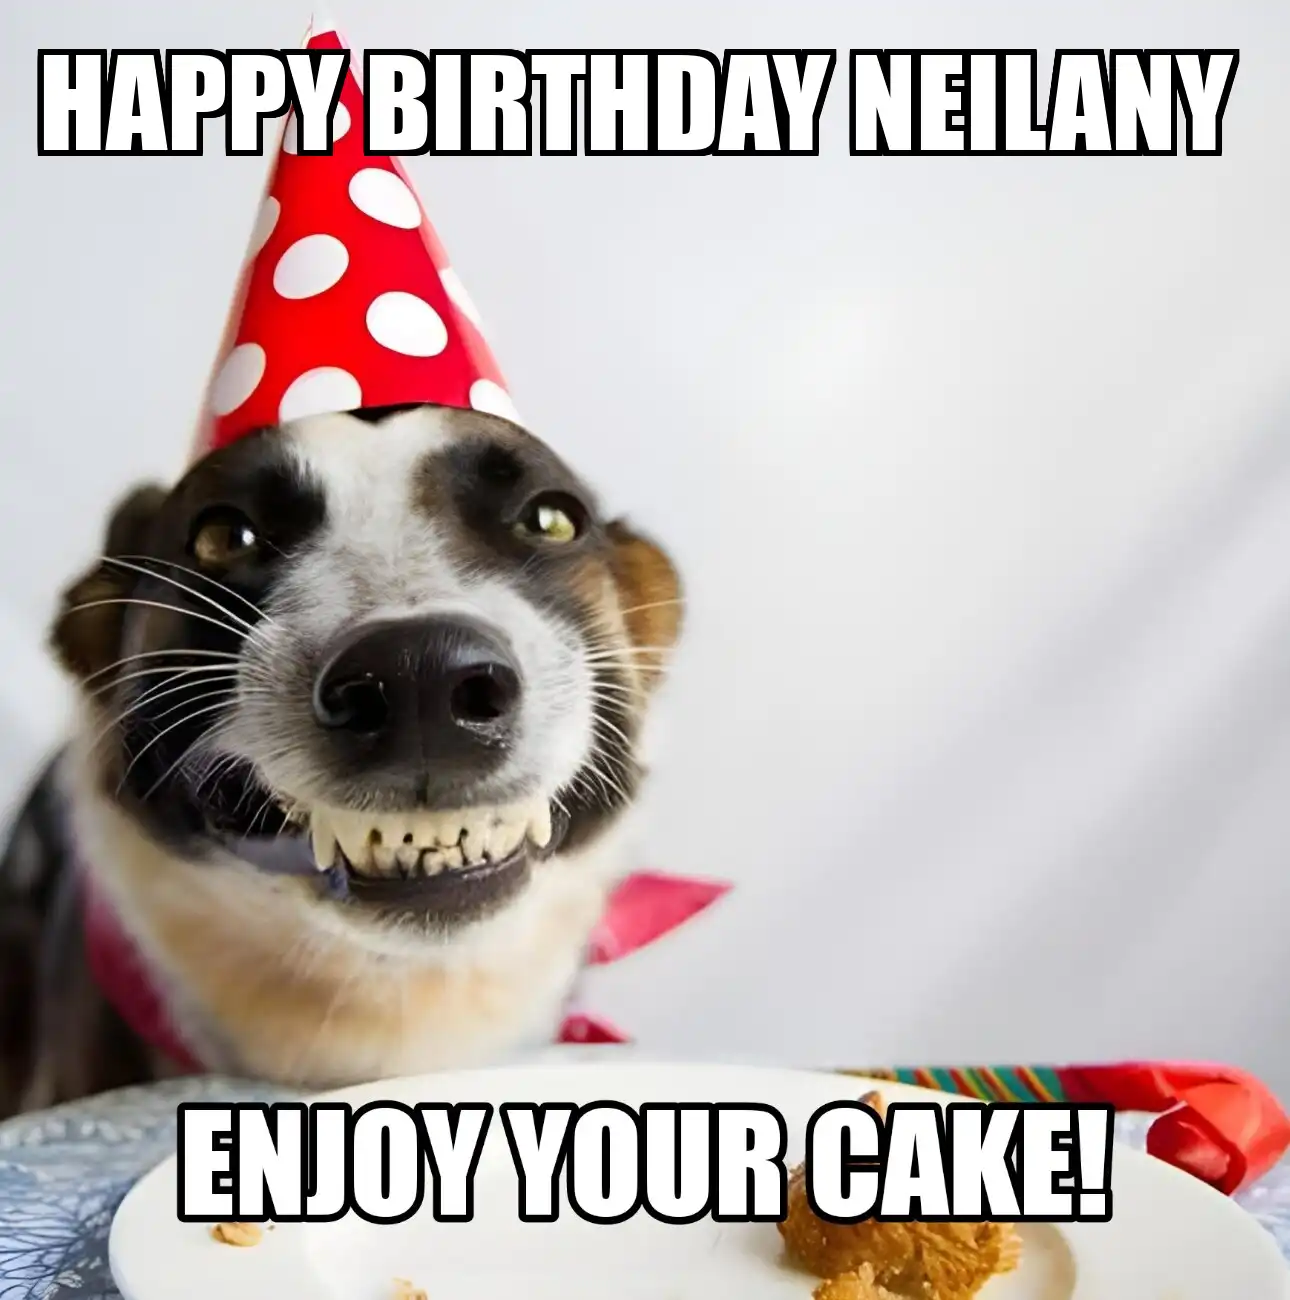 Happy Birthday Neilany Enjoy Your Cake Dog Meme